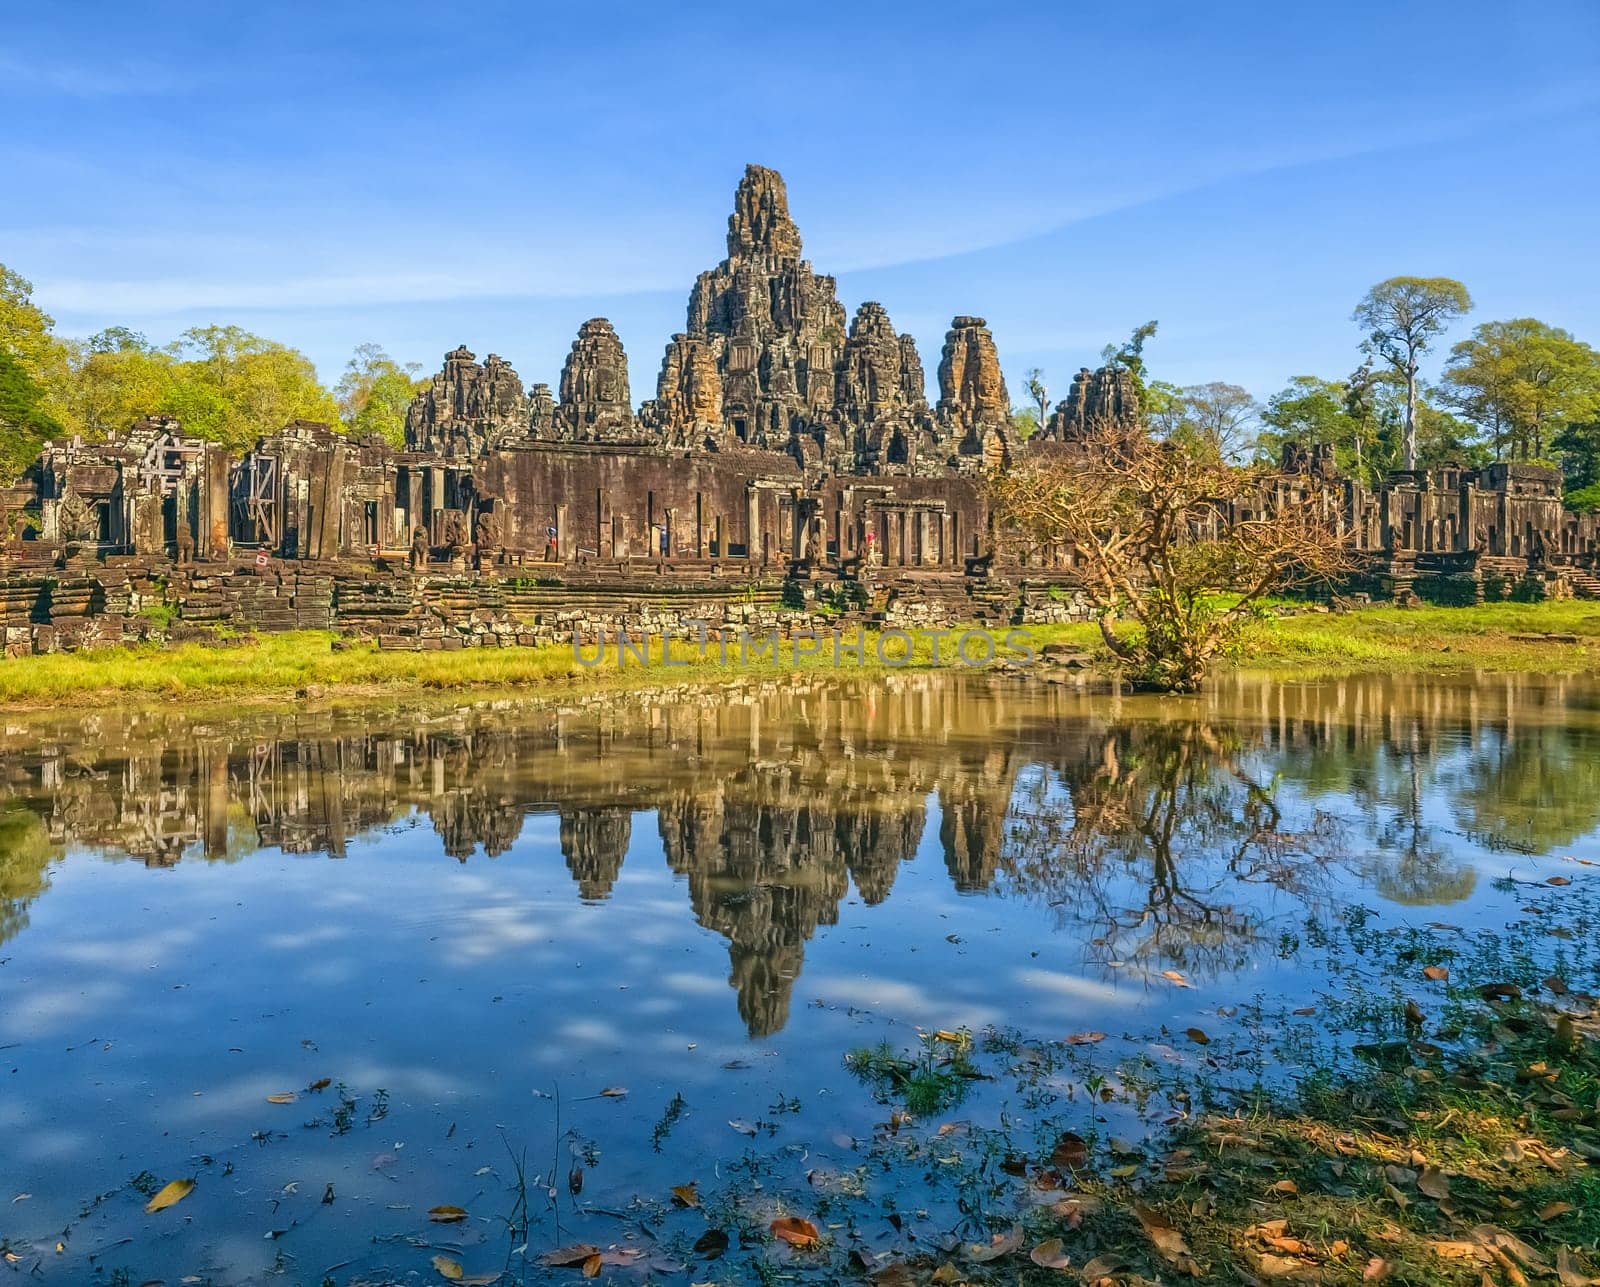 Bayon temple at Angkor Thom, Siem Reap, Cambodia by Elenaphotos21